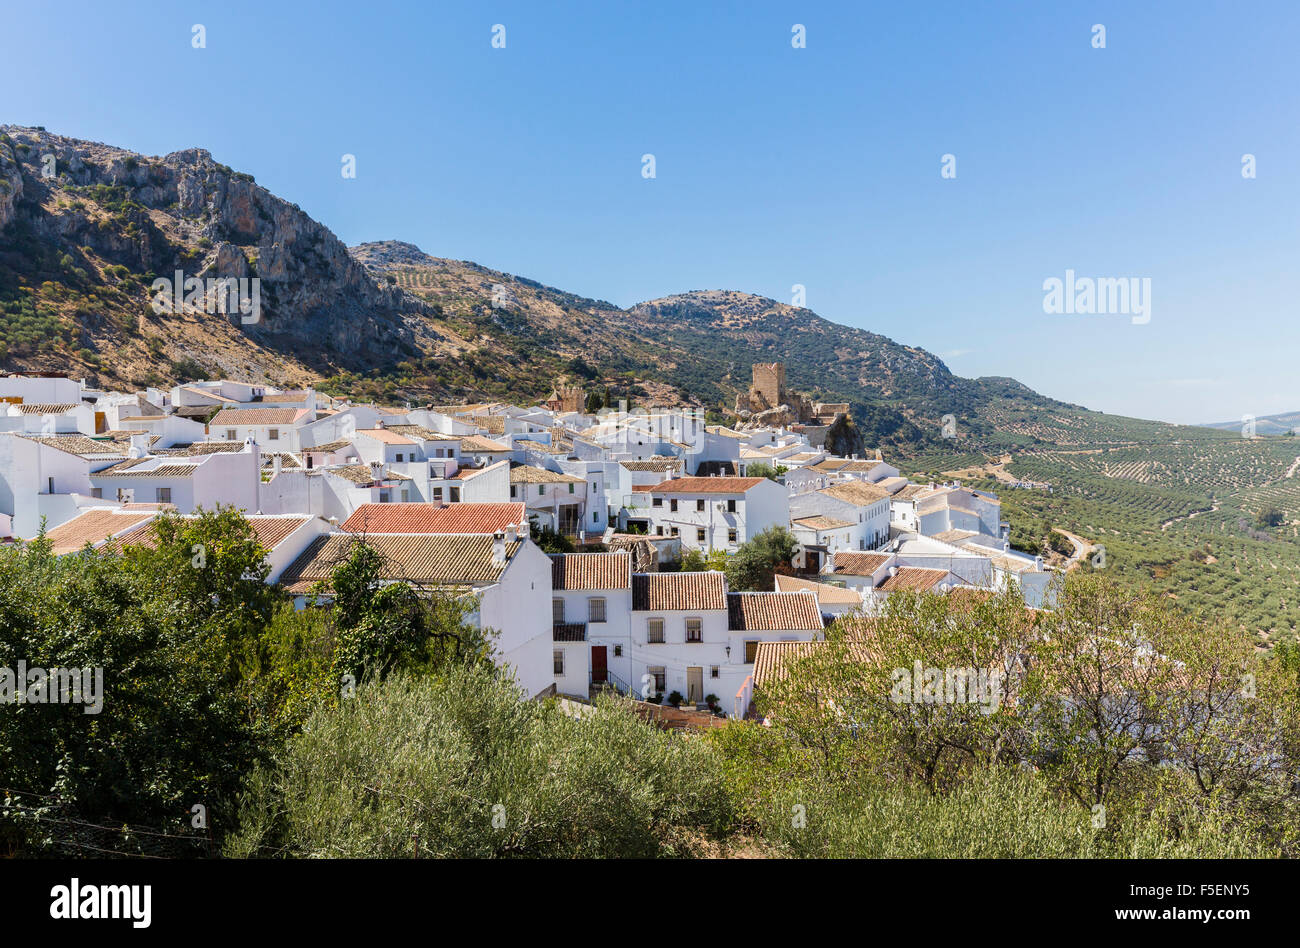 Village de Zuheros en Andalousie dans le sud de l'Espagne Banque D'Images